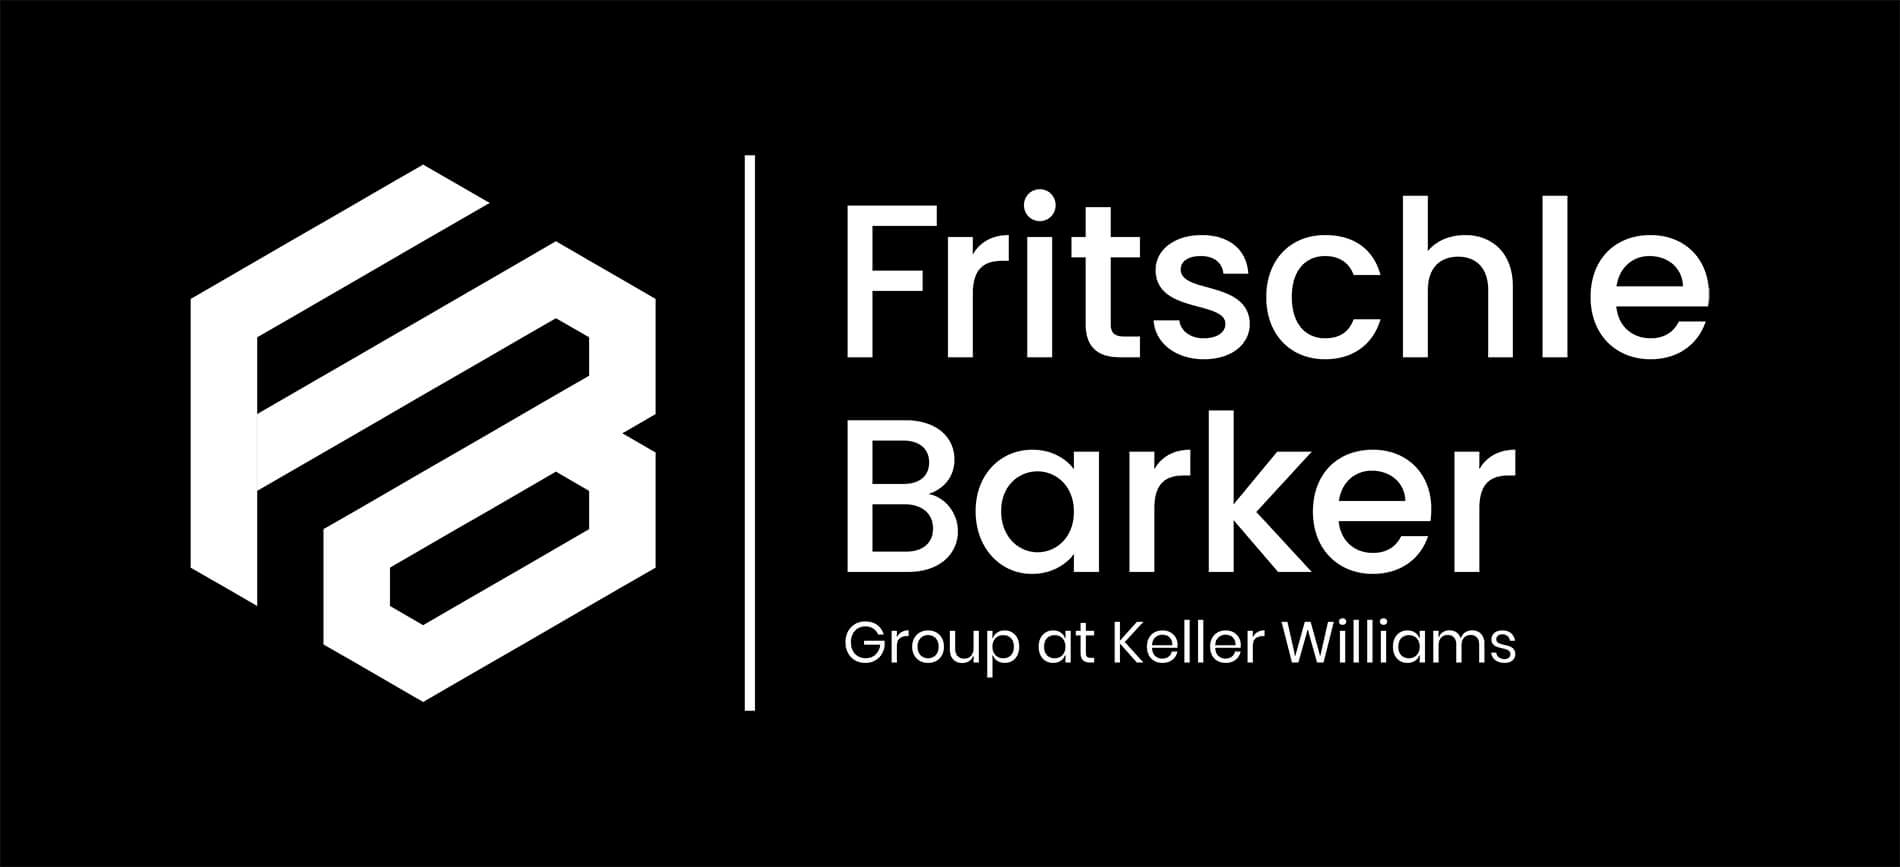 Grant Fritschle & Jon Barker, Fritschle Barker Group at Keller Williams